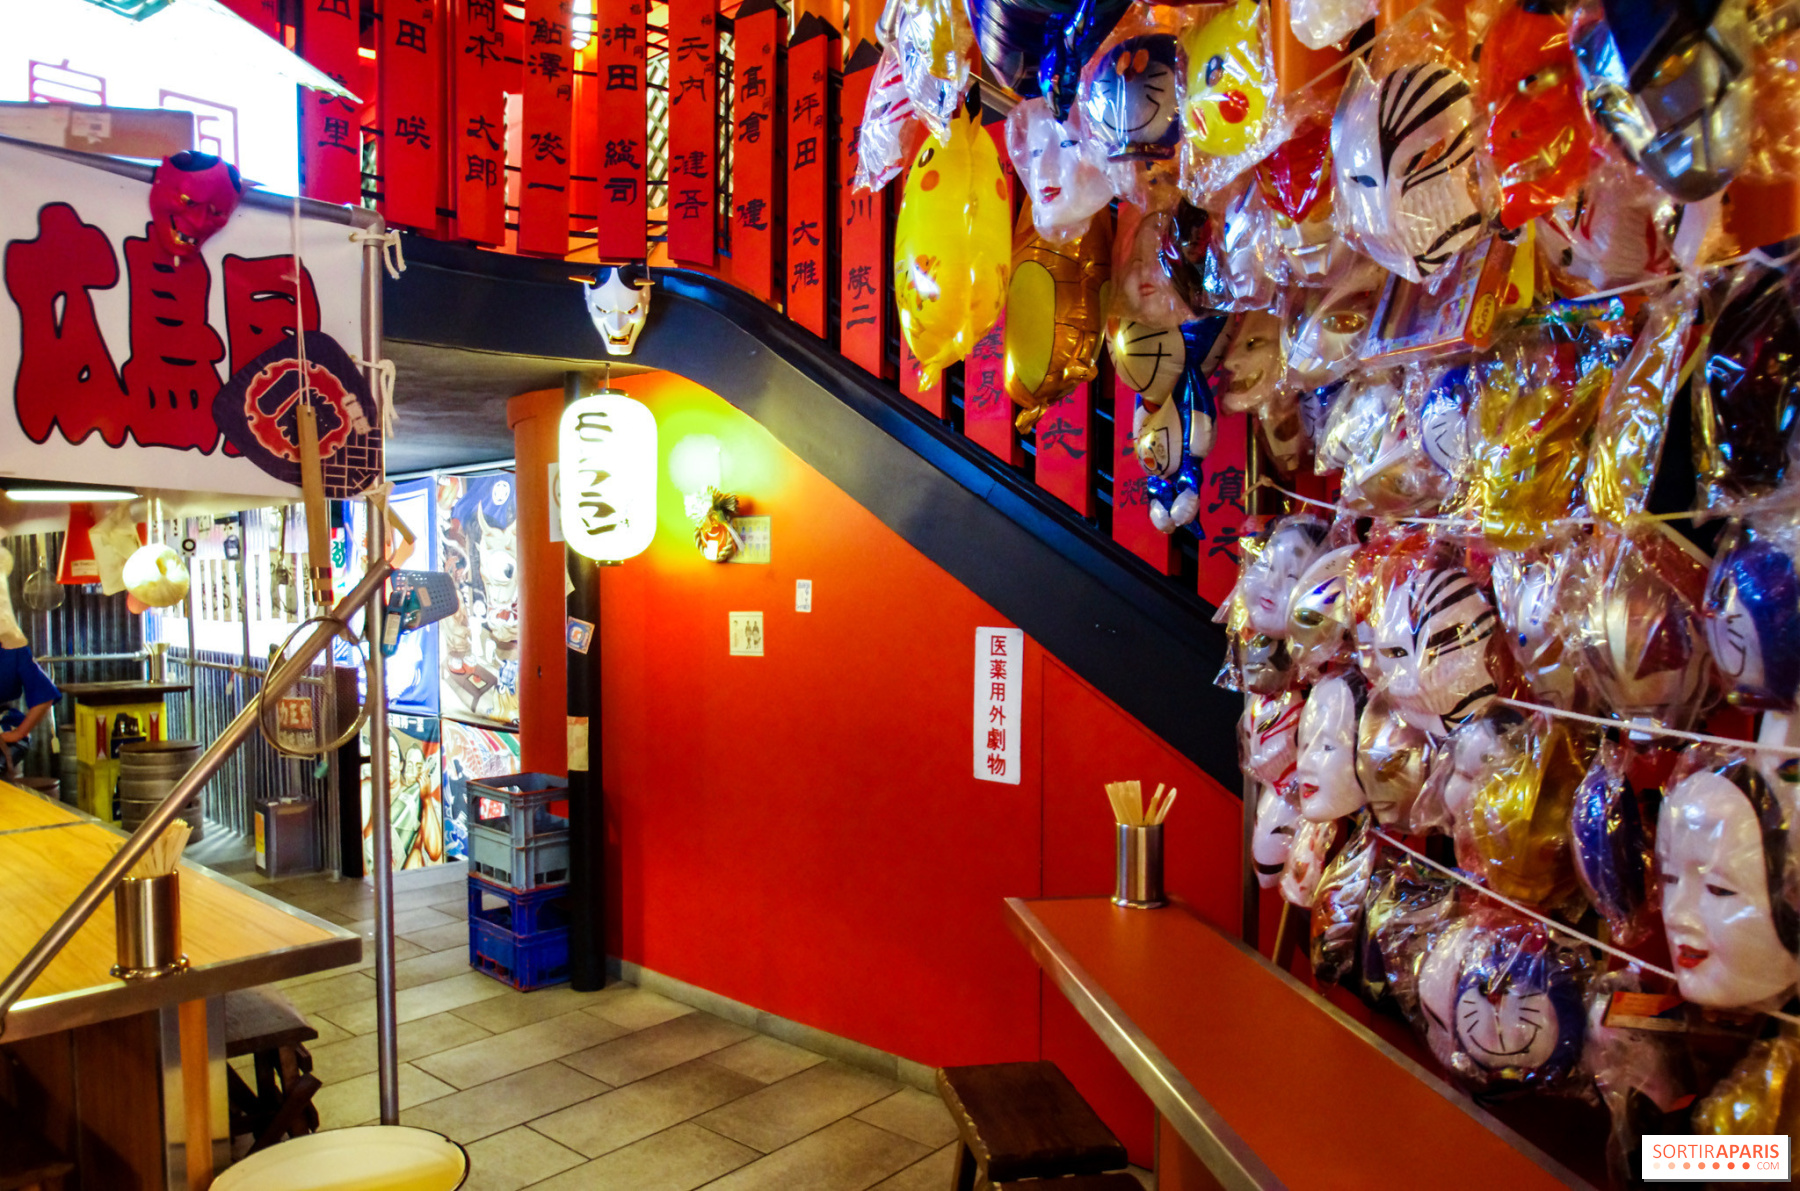 Les restaurants de ramen japonais arrivent à Paris - Maximag.fr